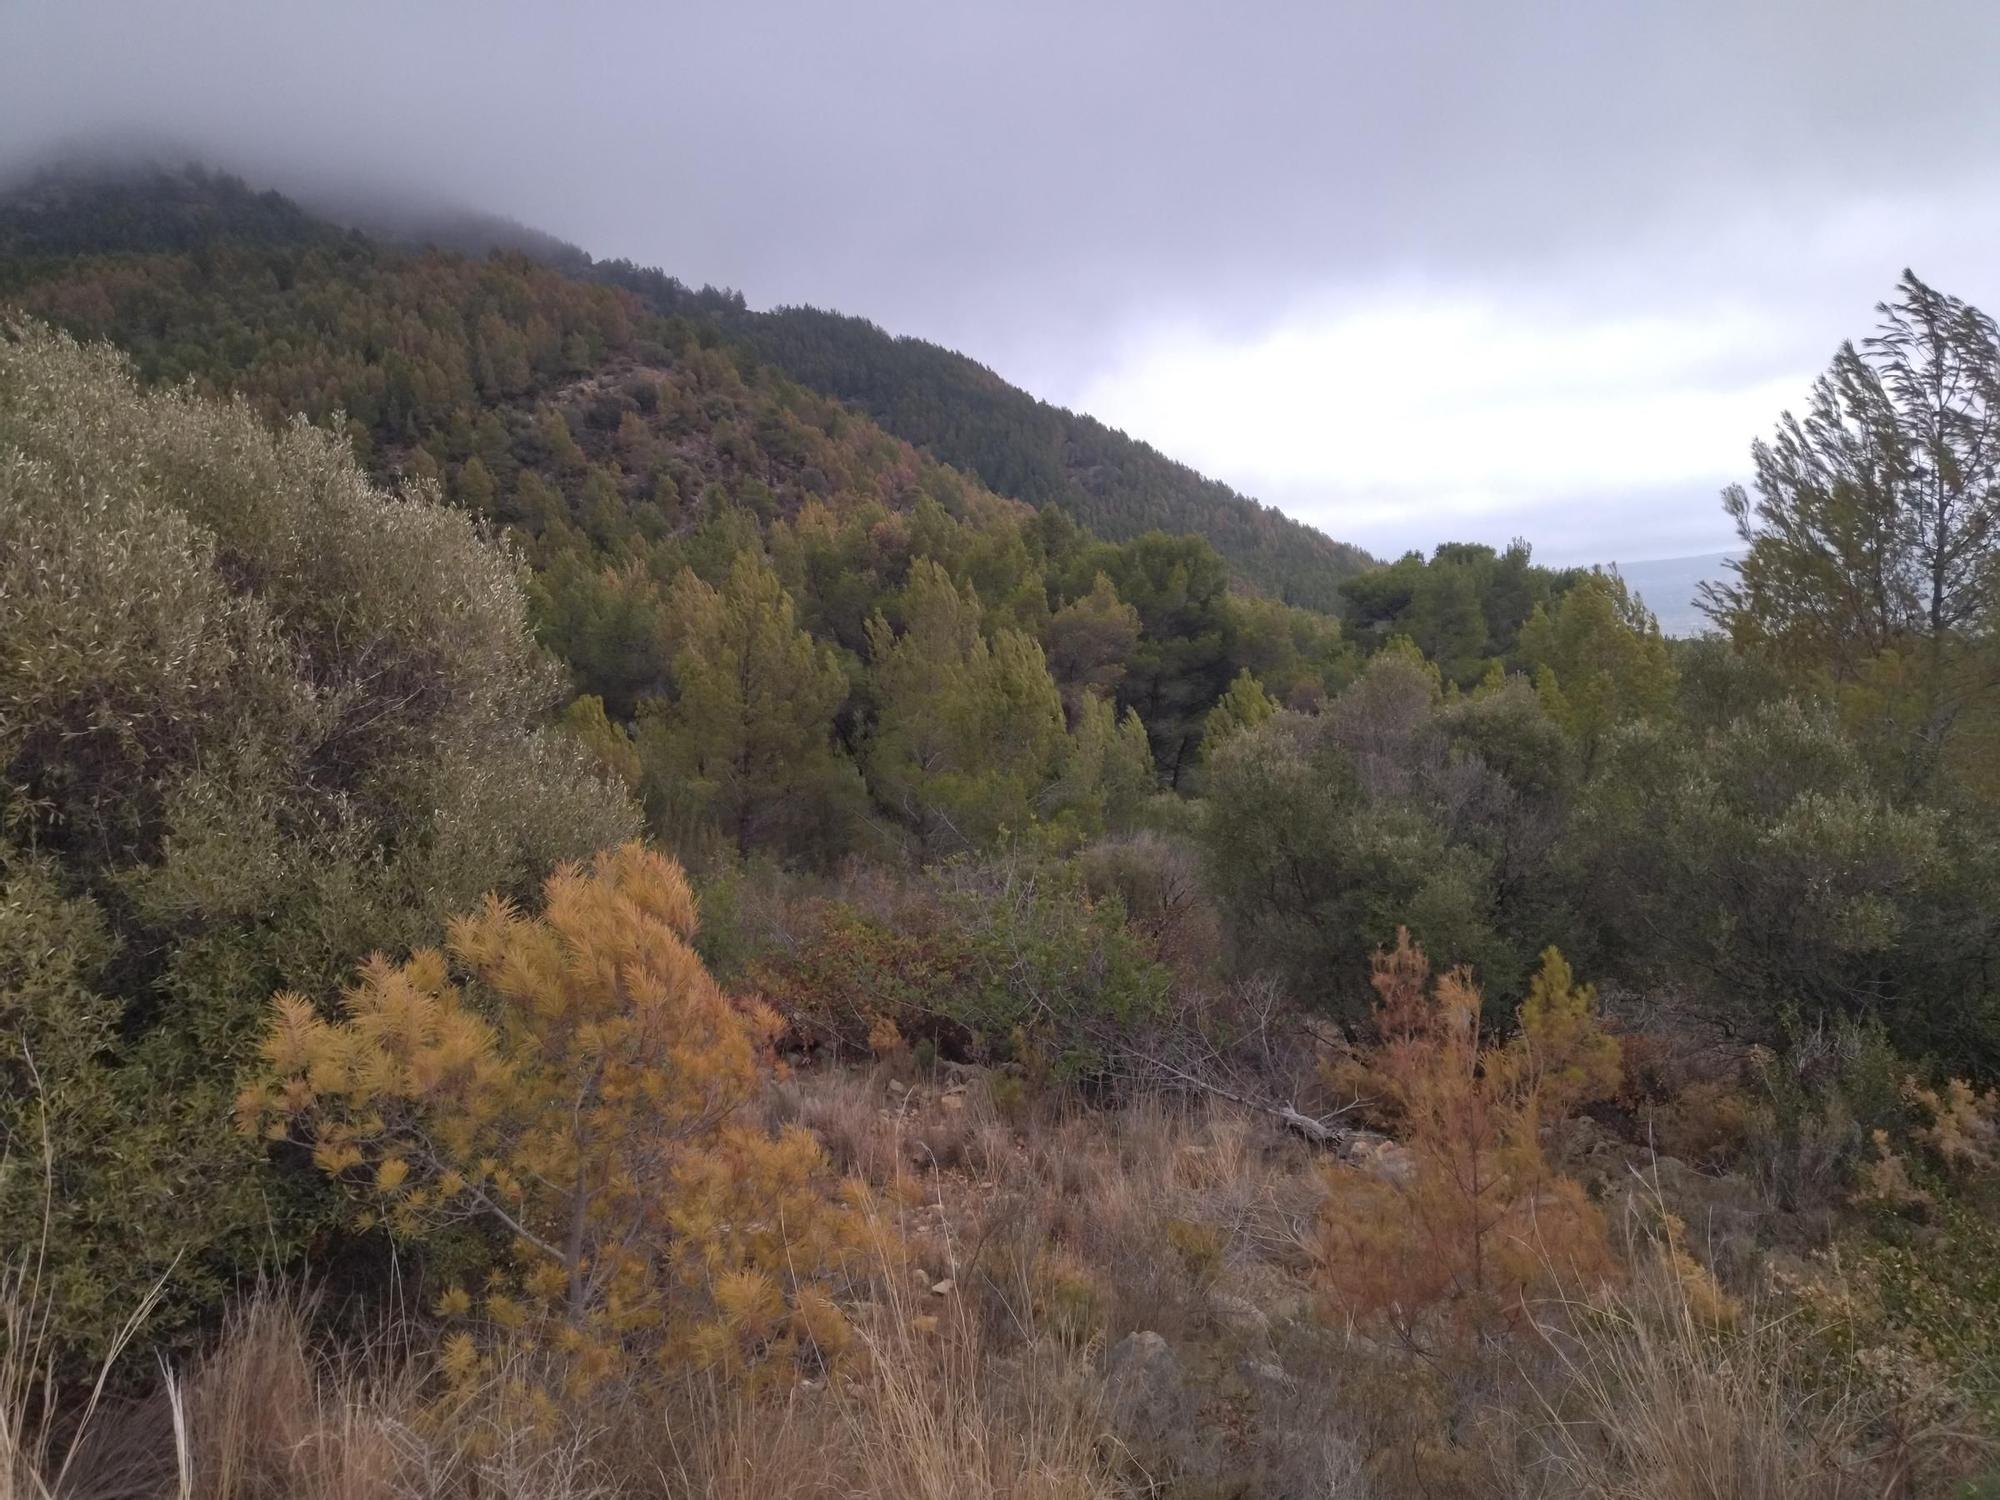 El Montgó pide agua a gritos: paisaje amarillo por la sequía (imágenes)